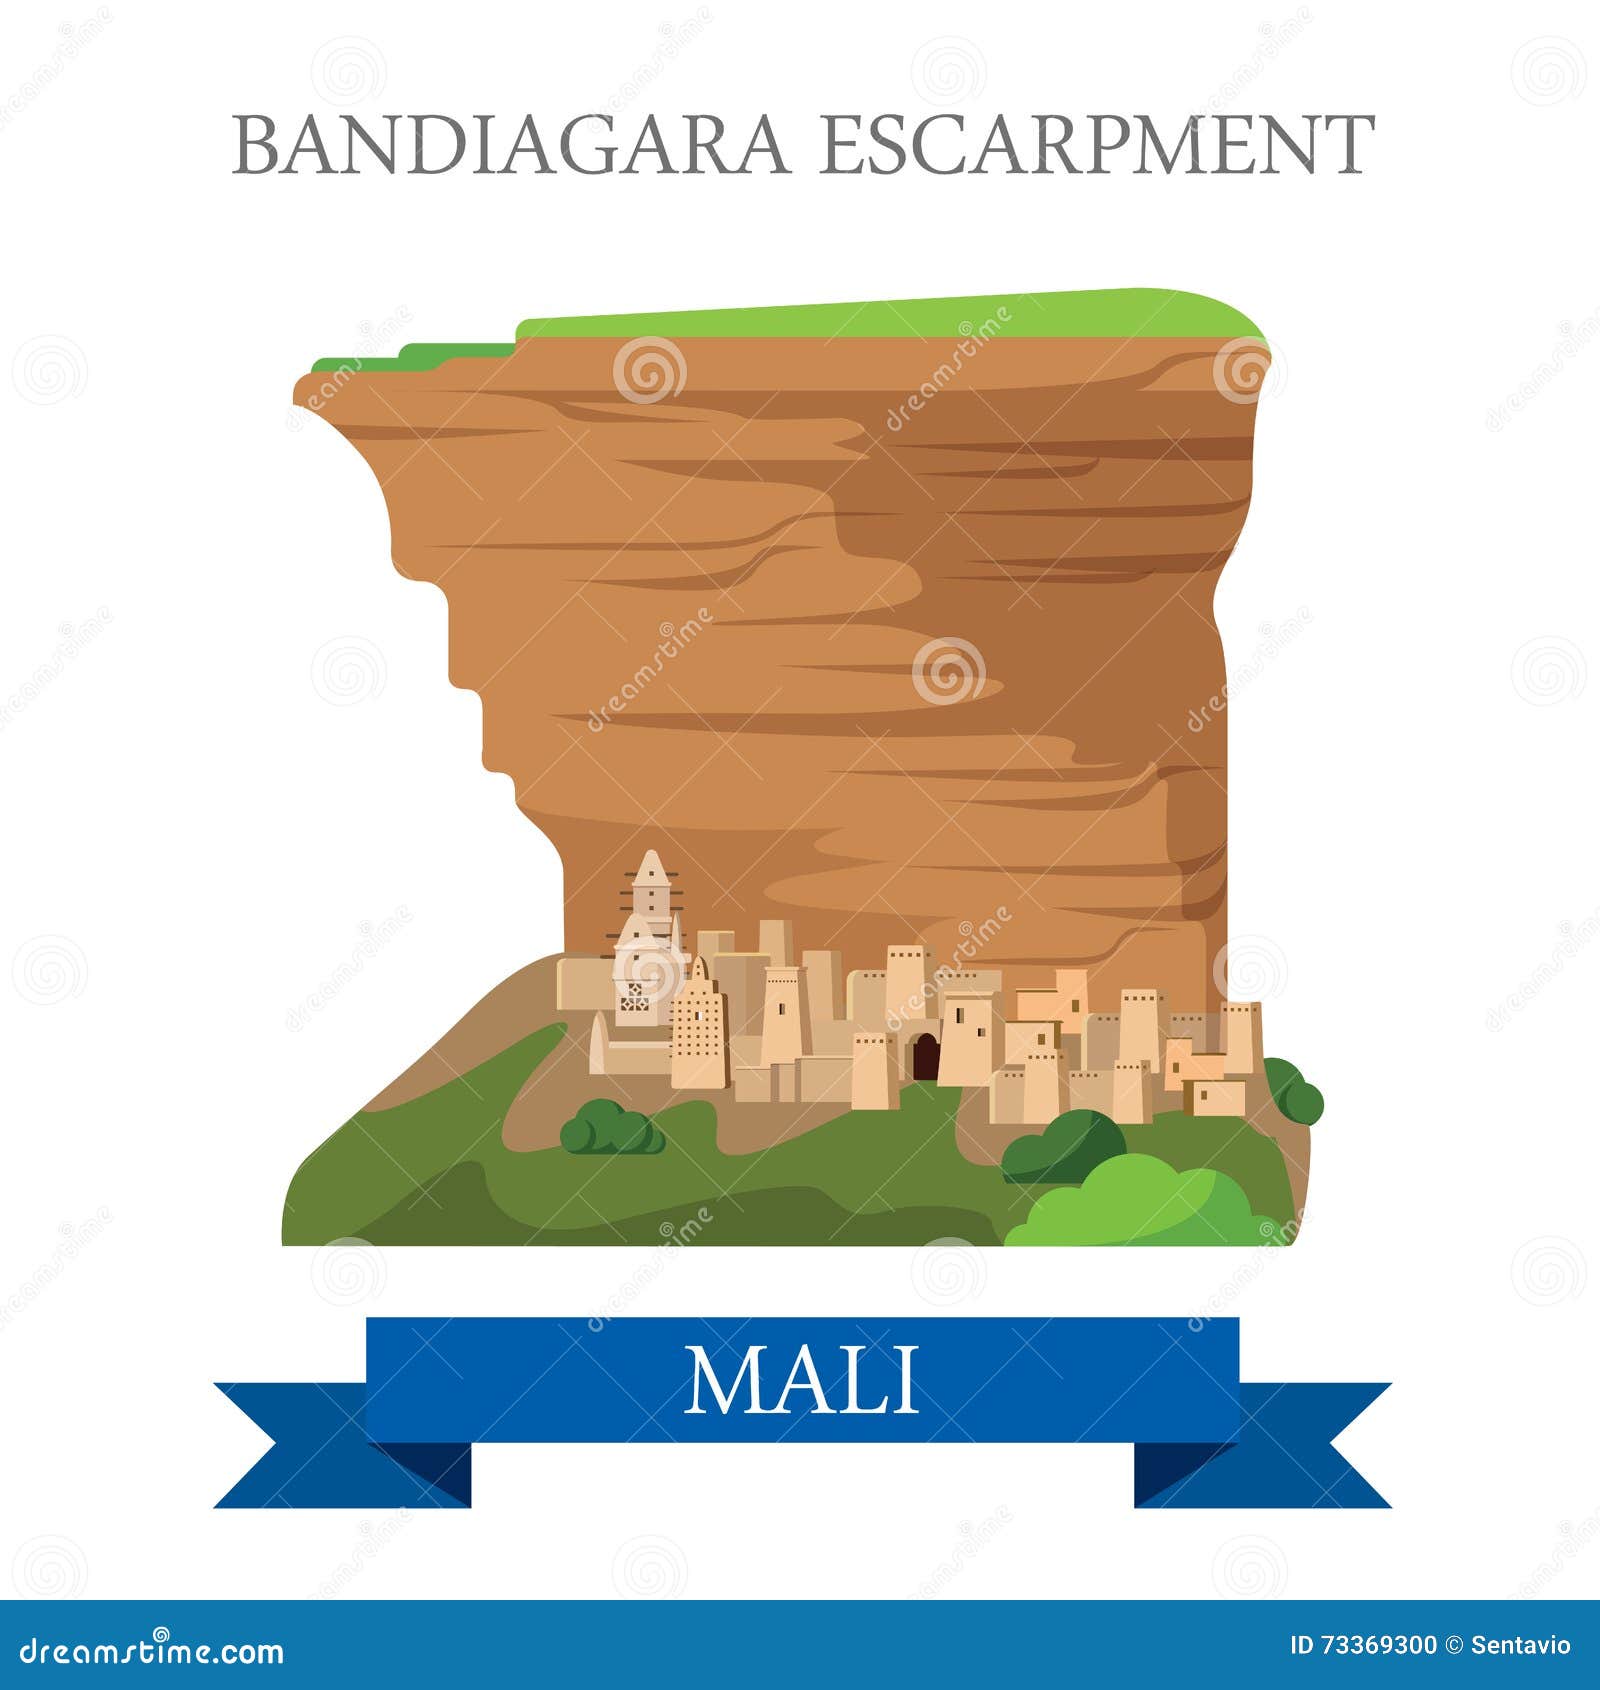 bandiagara escarpment in mali. flat historic vecto